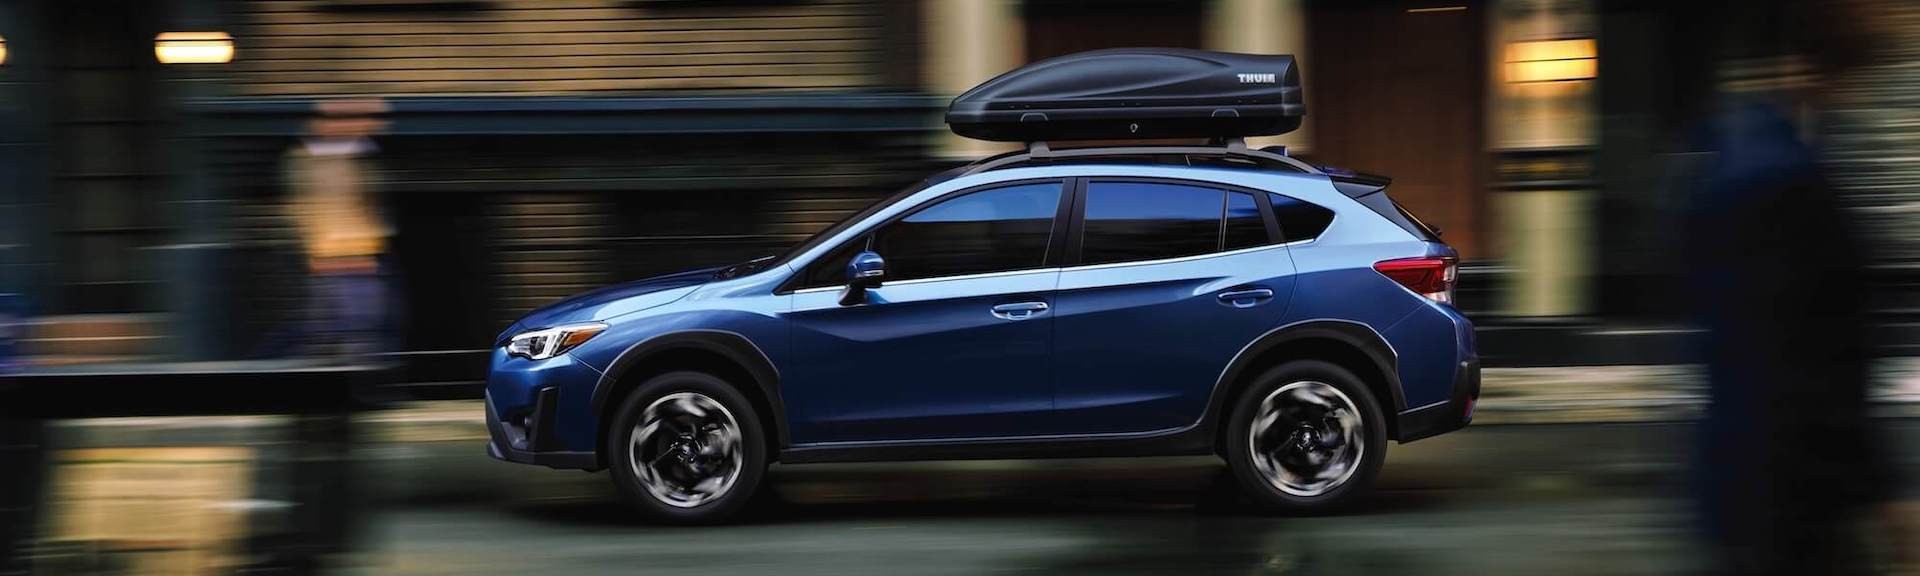 Subaru Crosstrek d’occasion à vendre à Québec